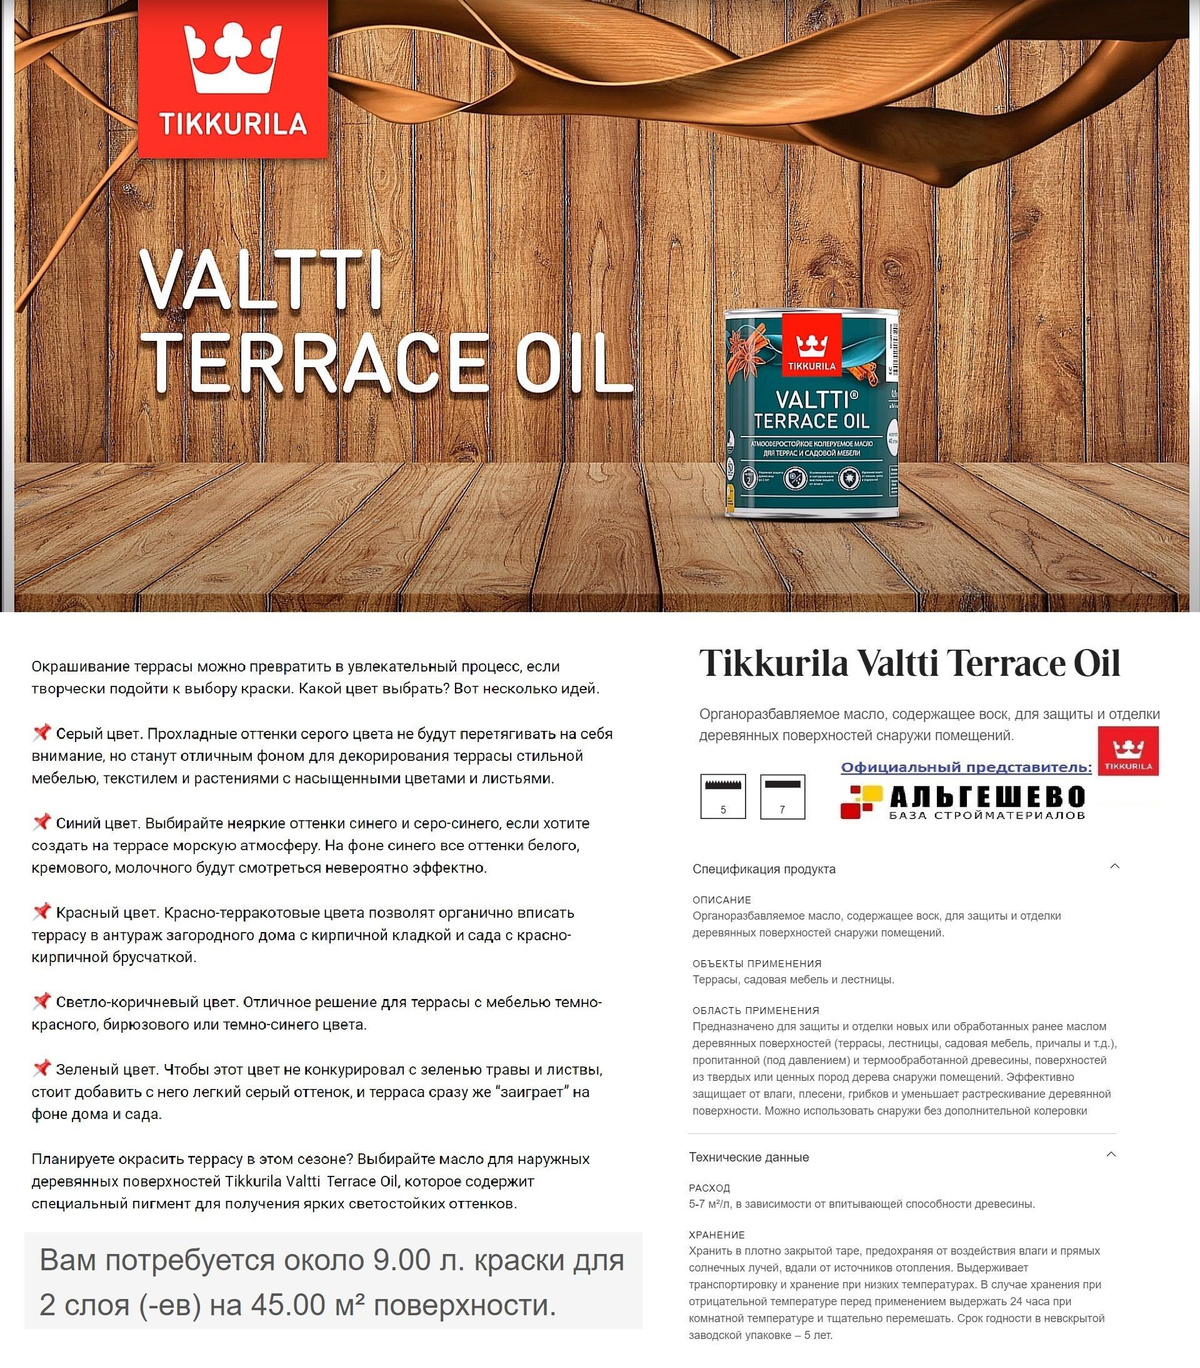 Tikkurila Valtti Terrace Oil Органоразбавляемое масло, содержащее воск, для защиты и отделки деревянных поверхностей снаружи помещений.